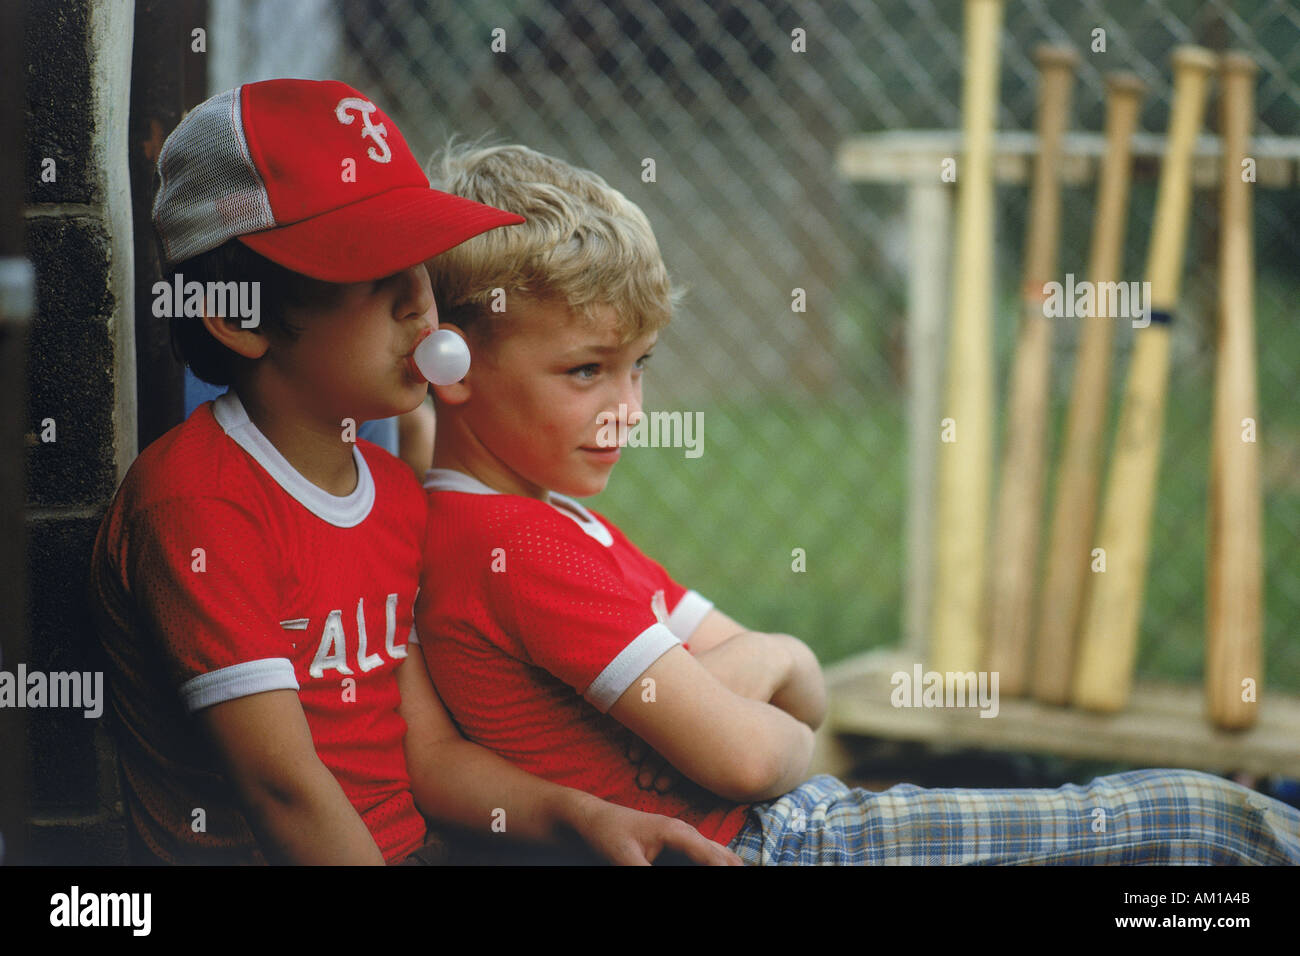 Poco i leghisti seduto con le mazze da baseball chewing bubble gum USA Foto Stock